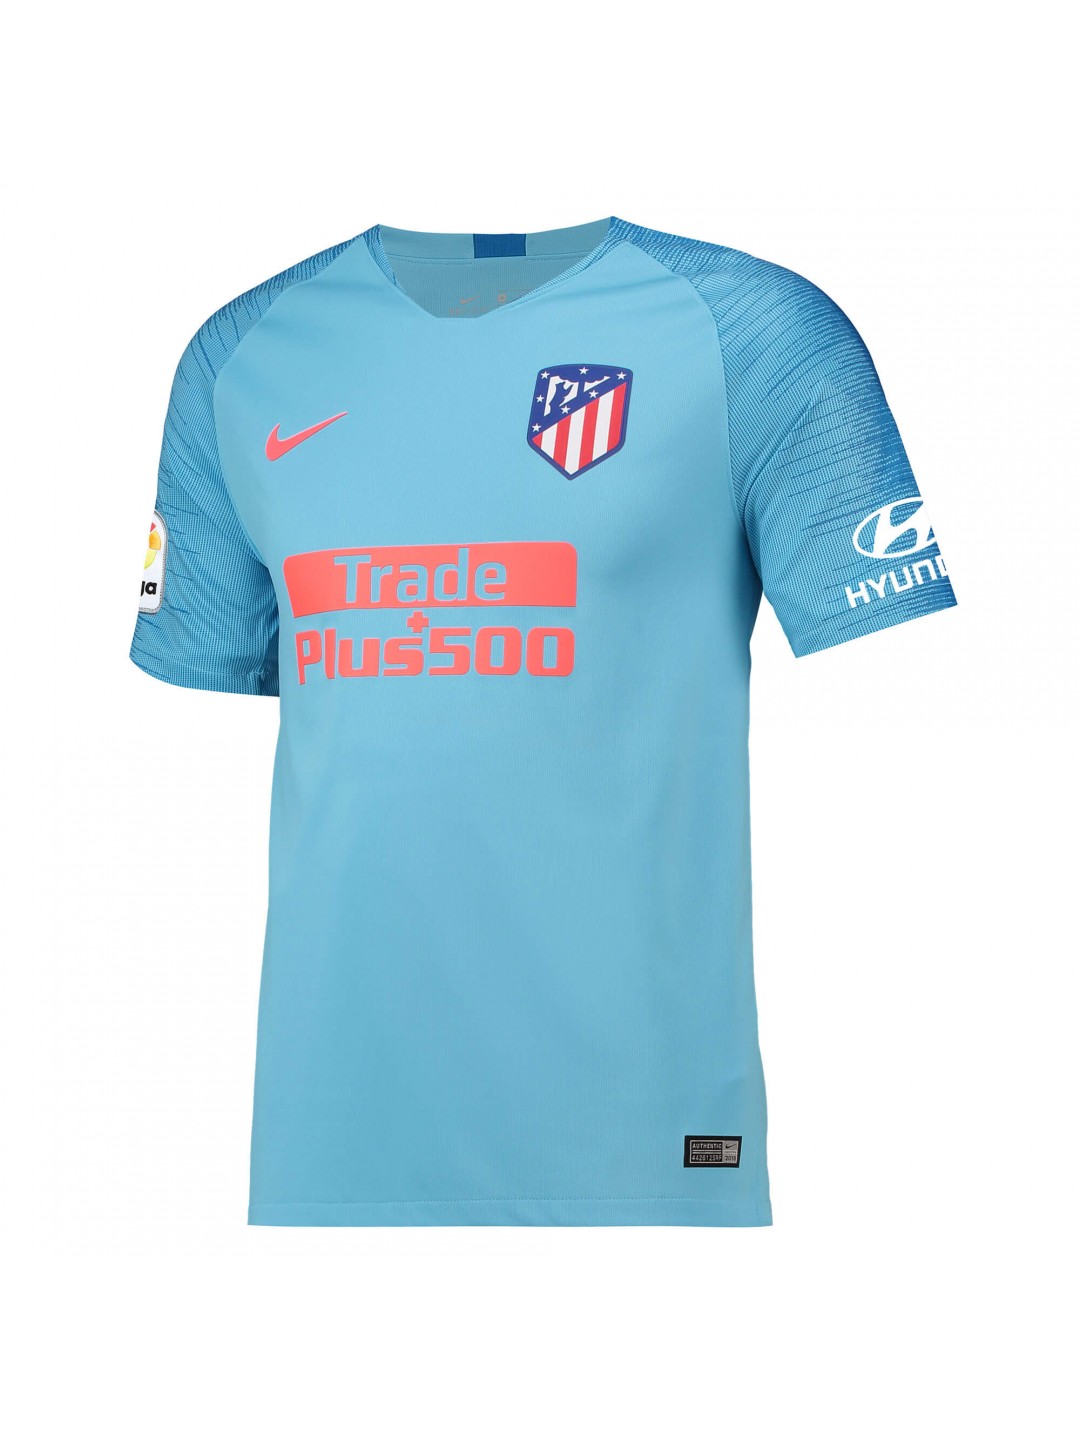 Comprar Camiseta Stadium la Segunda equipación del Atlético de Madrid 2018-19 Baratas